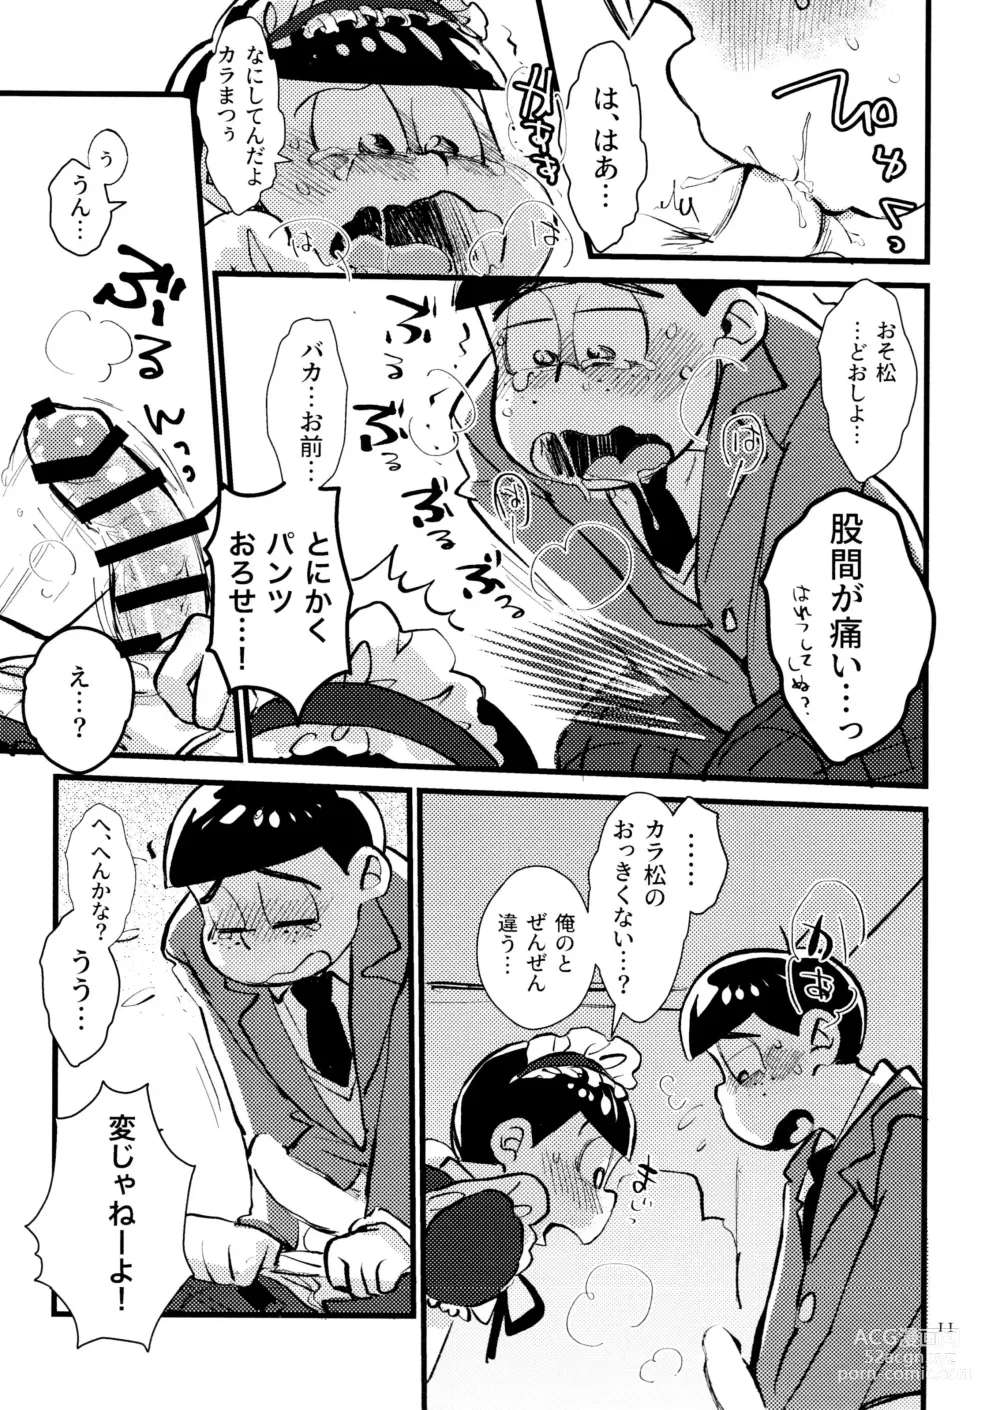 Page 11 of doujinshi Boku no Ecchi na Onii-chan